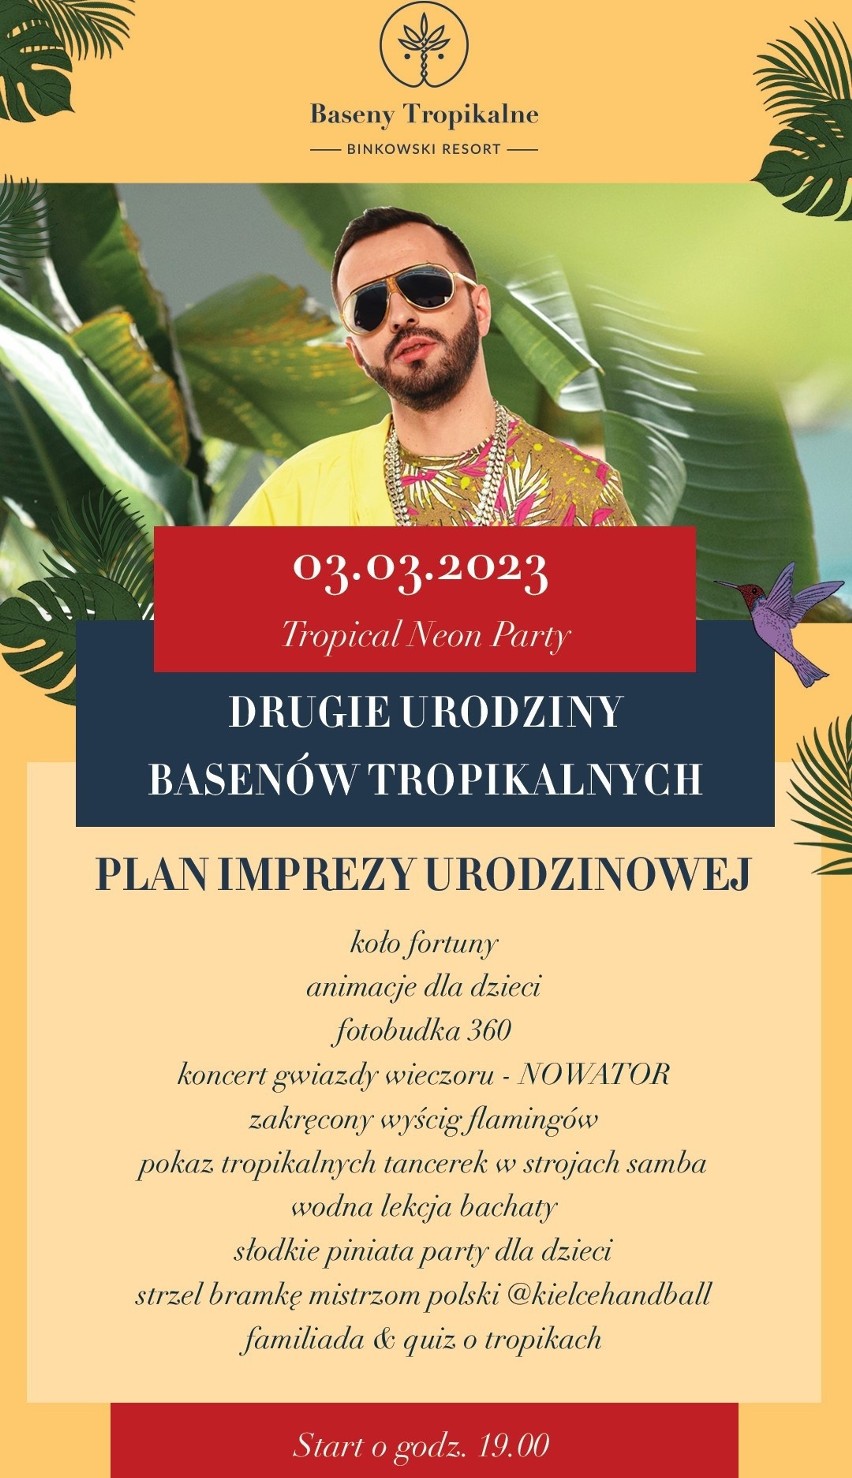 Urodziny Basenów Tropikalnych Binkowski Resort w Kielcach. To będzie impreza z niespodziankami. Gwiazdą - Nowator